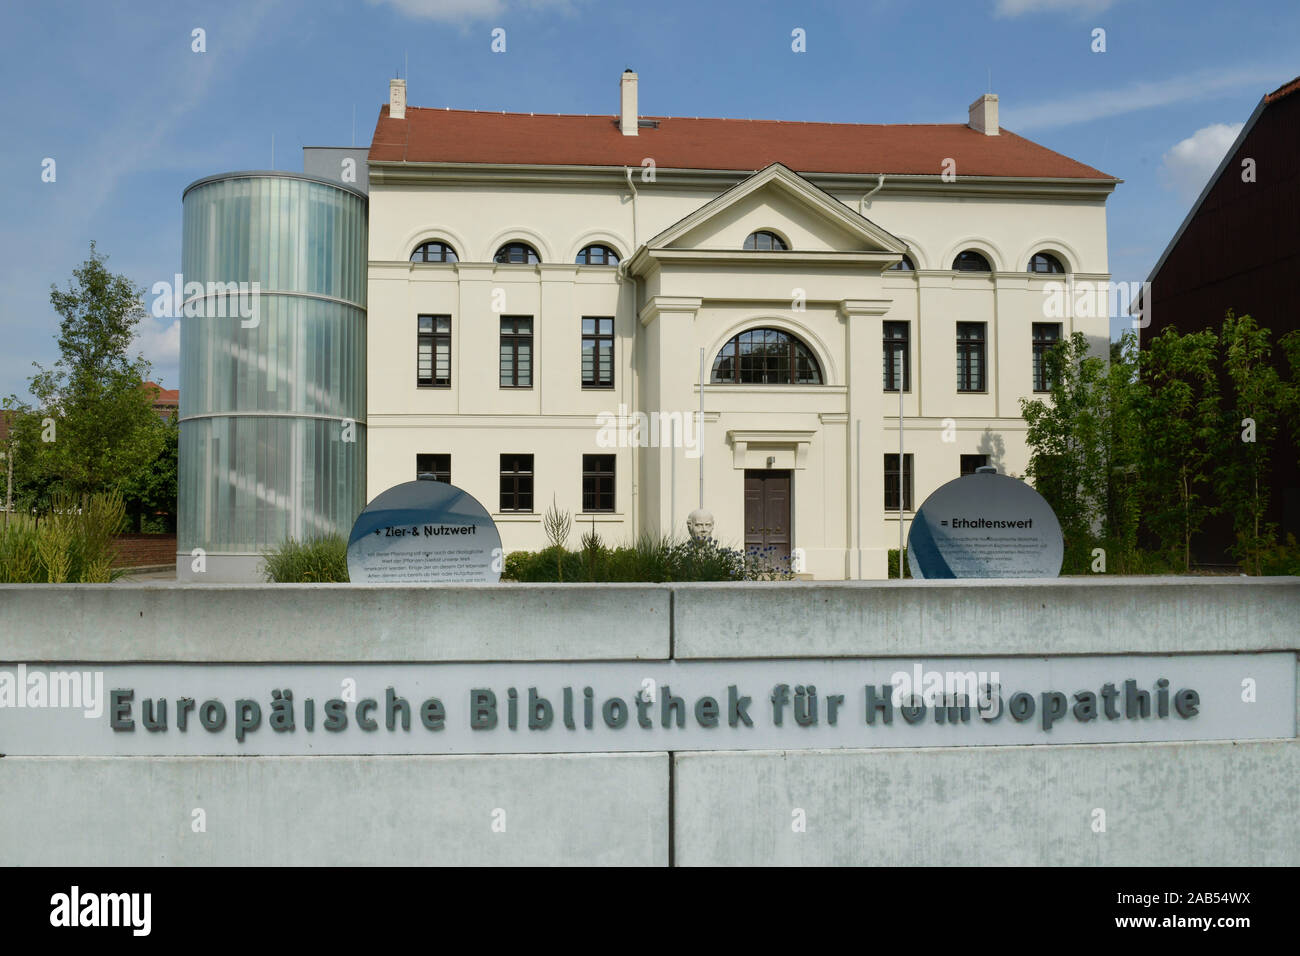 Europäische Bibliothek für Homöopathie, Wallstraße, Köthen, Sachsen-Anhalt, Deutschland Stock Photo